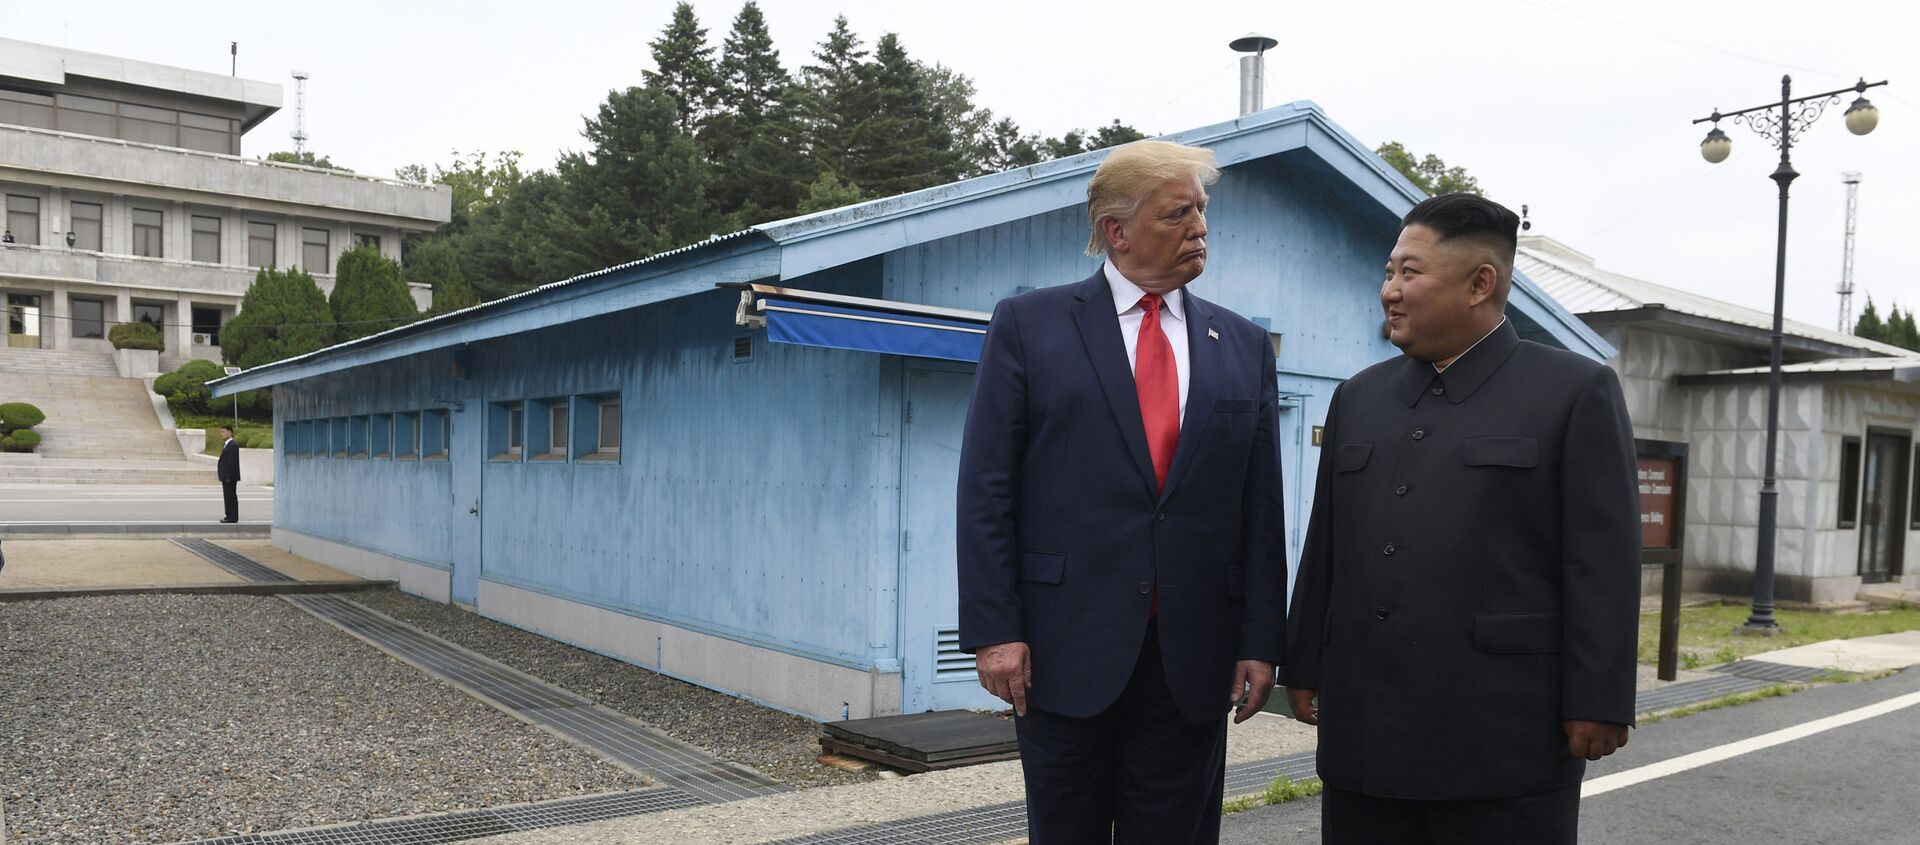 ABD Başkanı Donald Trump ve Kuzey Kore Lideri Kim Jong-un  - Sputnik Türkiye, 1920, 18.06.2020